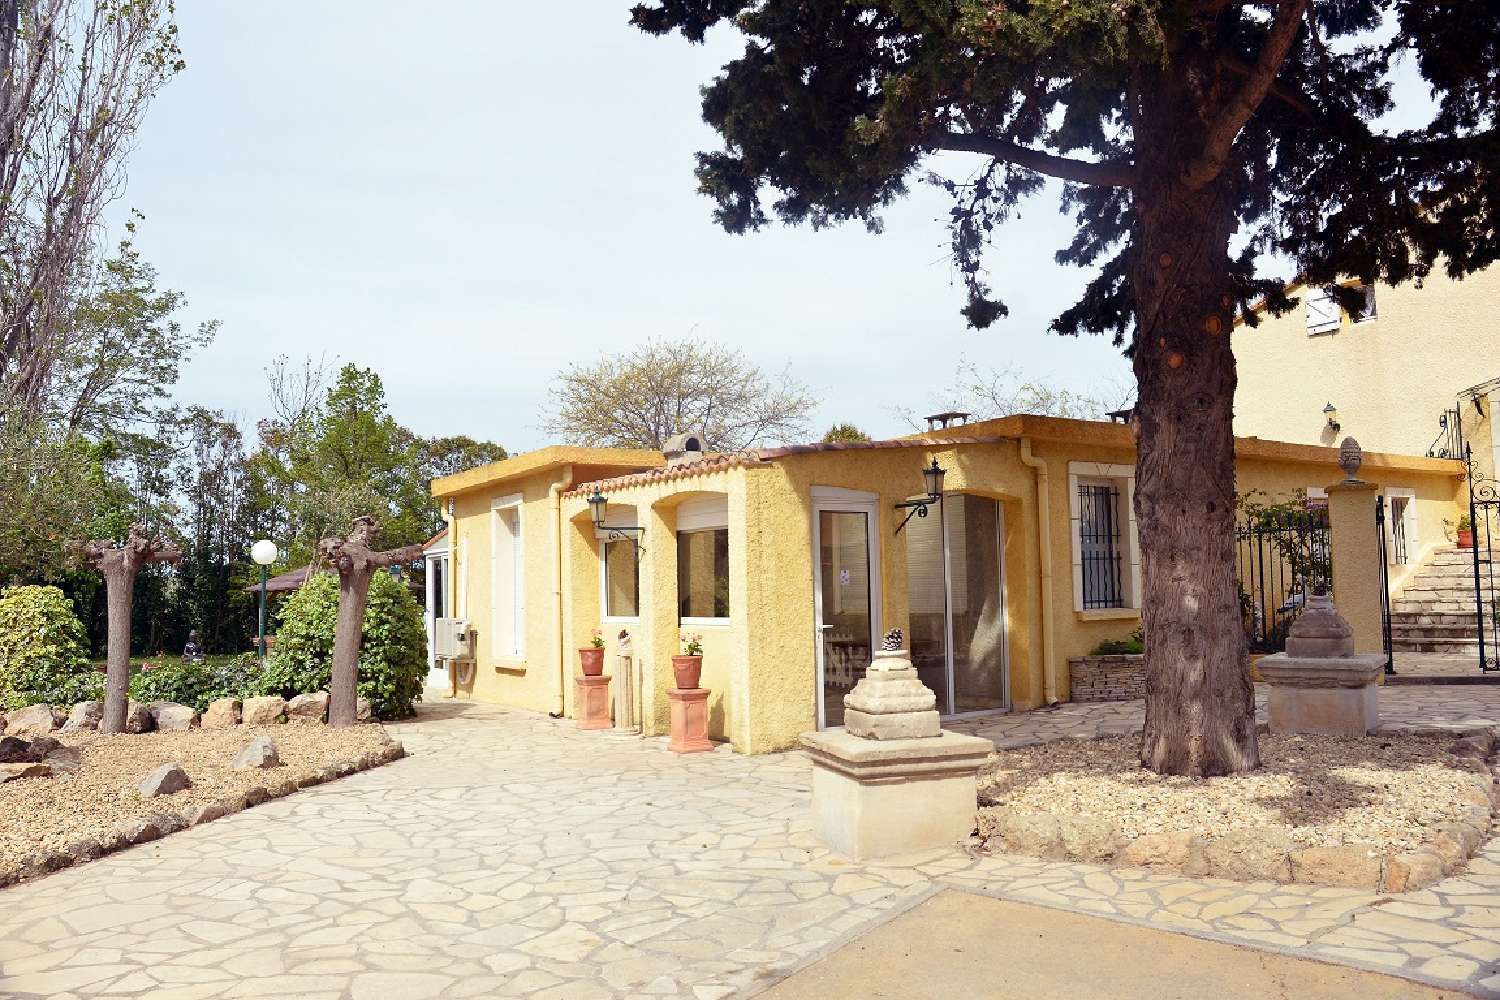  à vendre maison indépendant Béziers Hérault 2